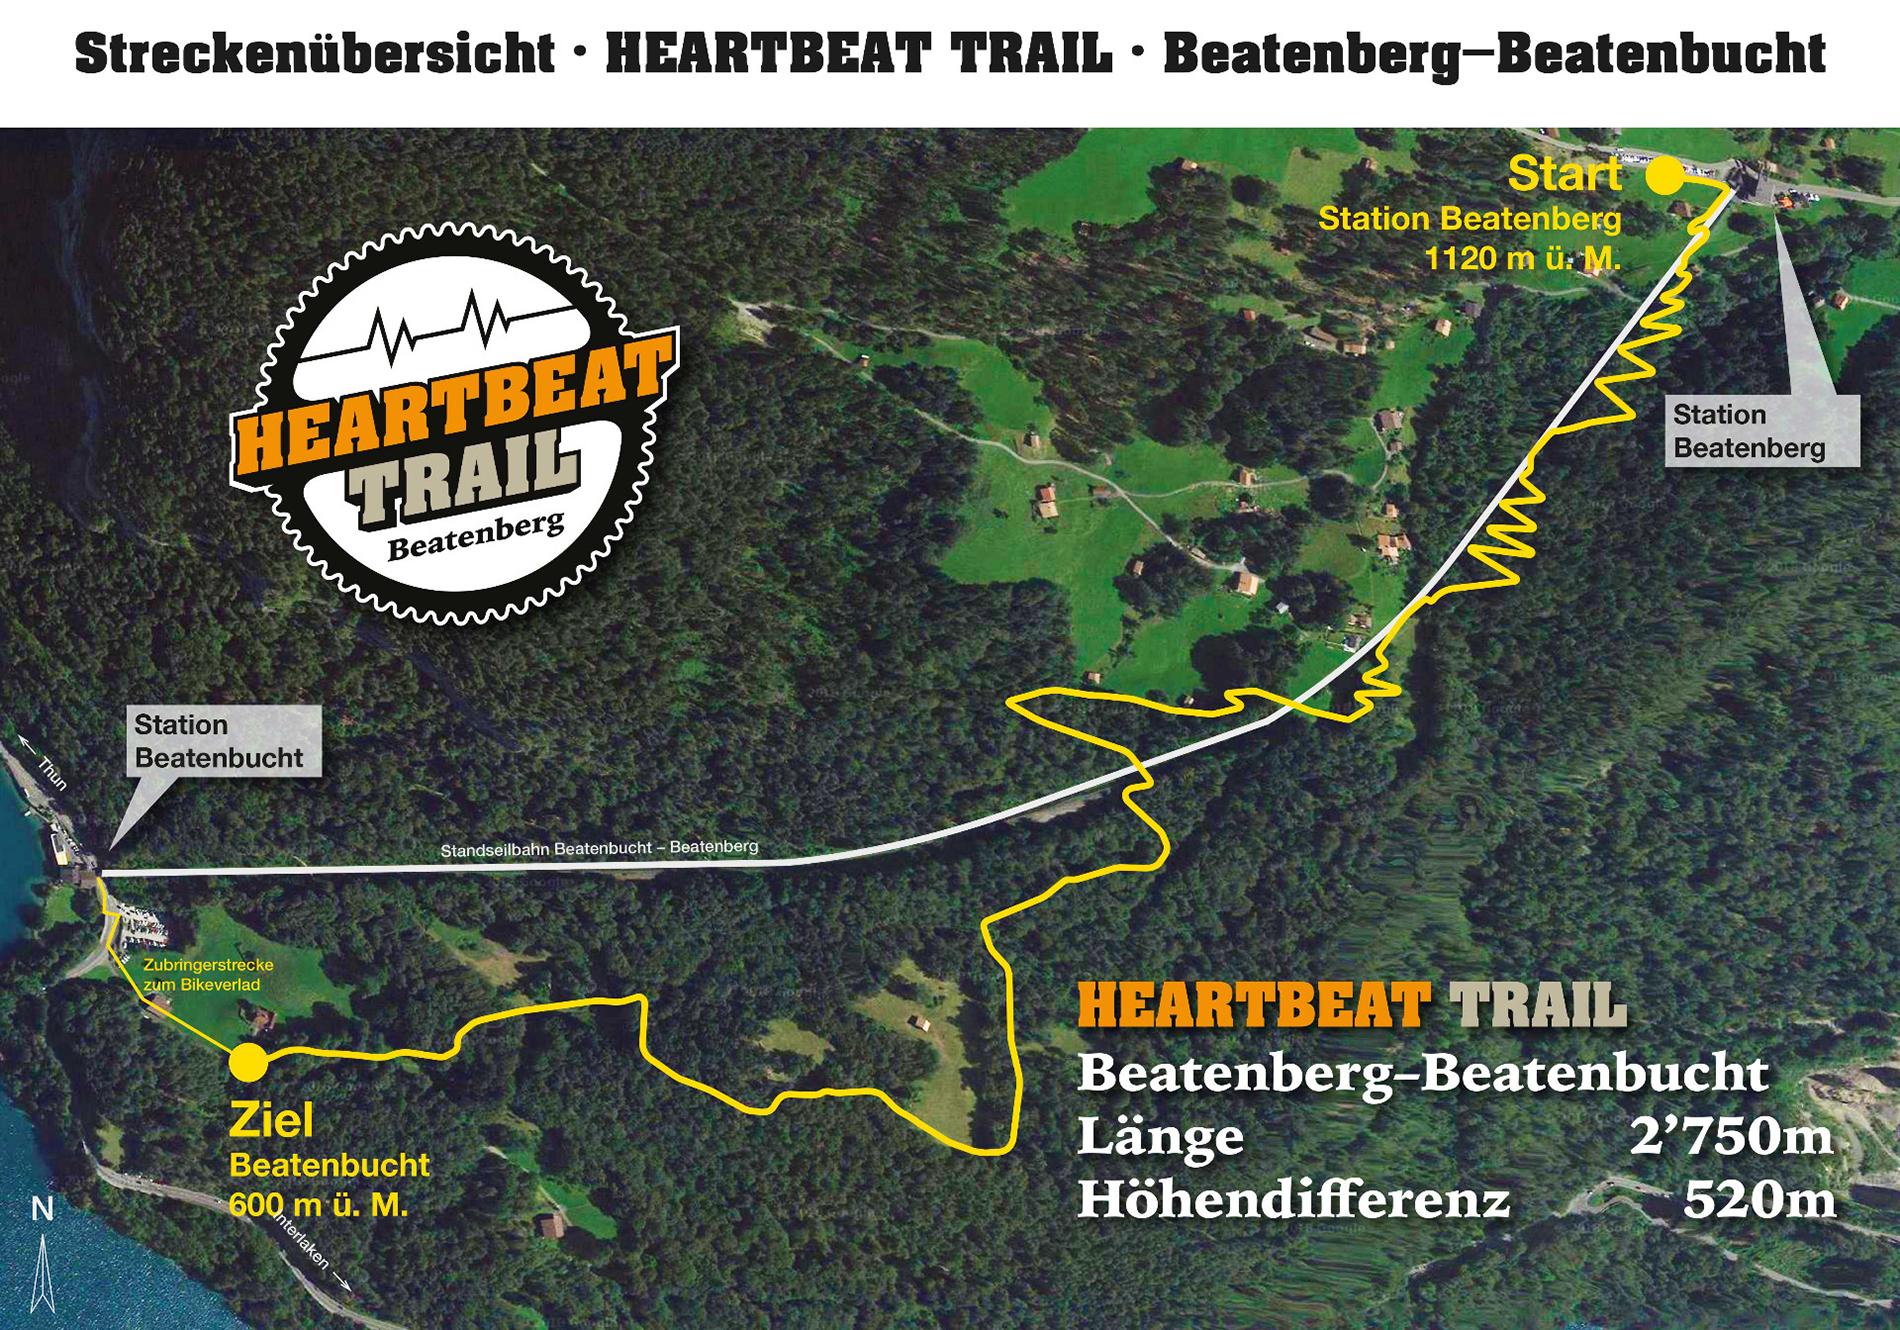 Heartbeat Trail Streckenplan 2018